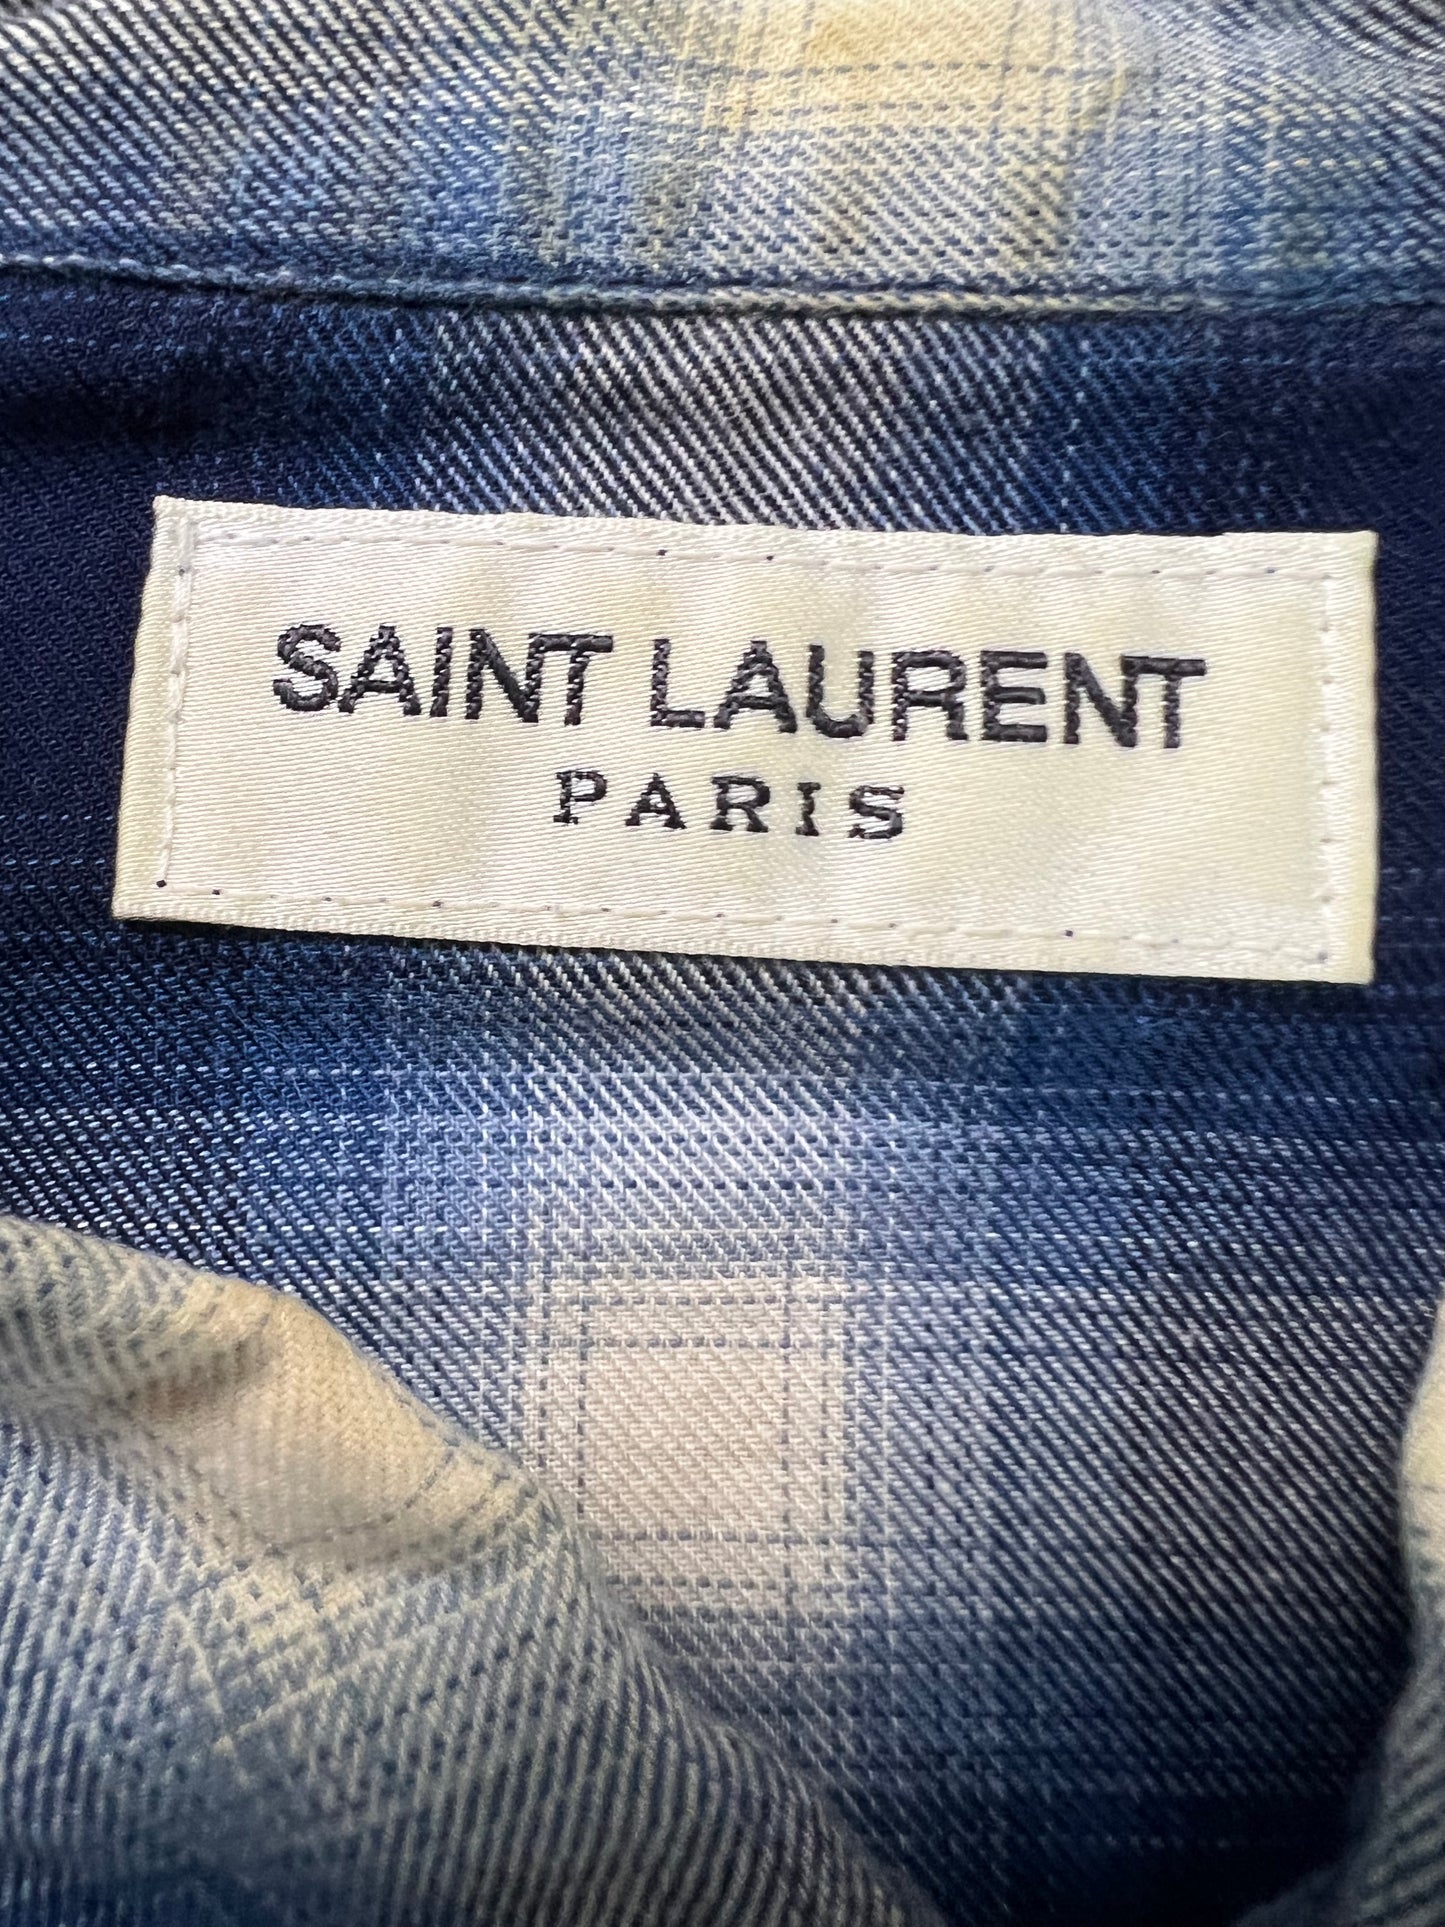 Saint Laurent Paris AW16 Flannel Blue Shirt SZ:M